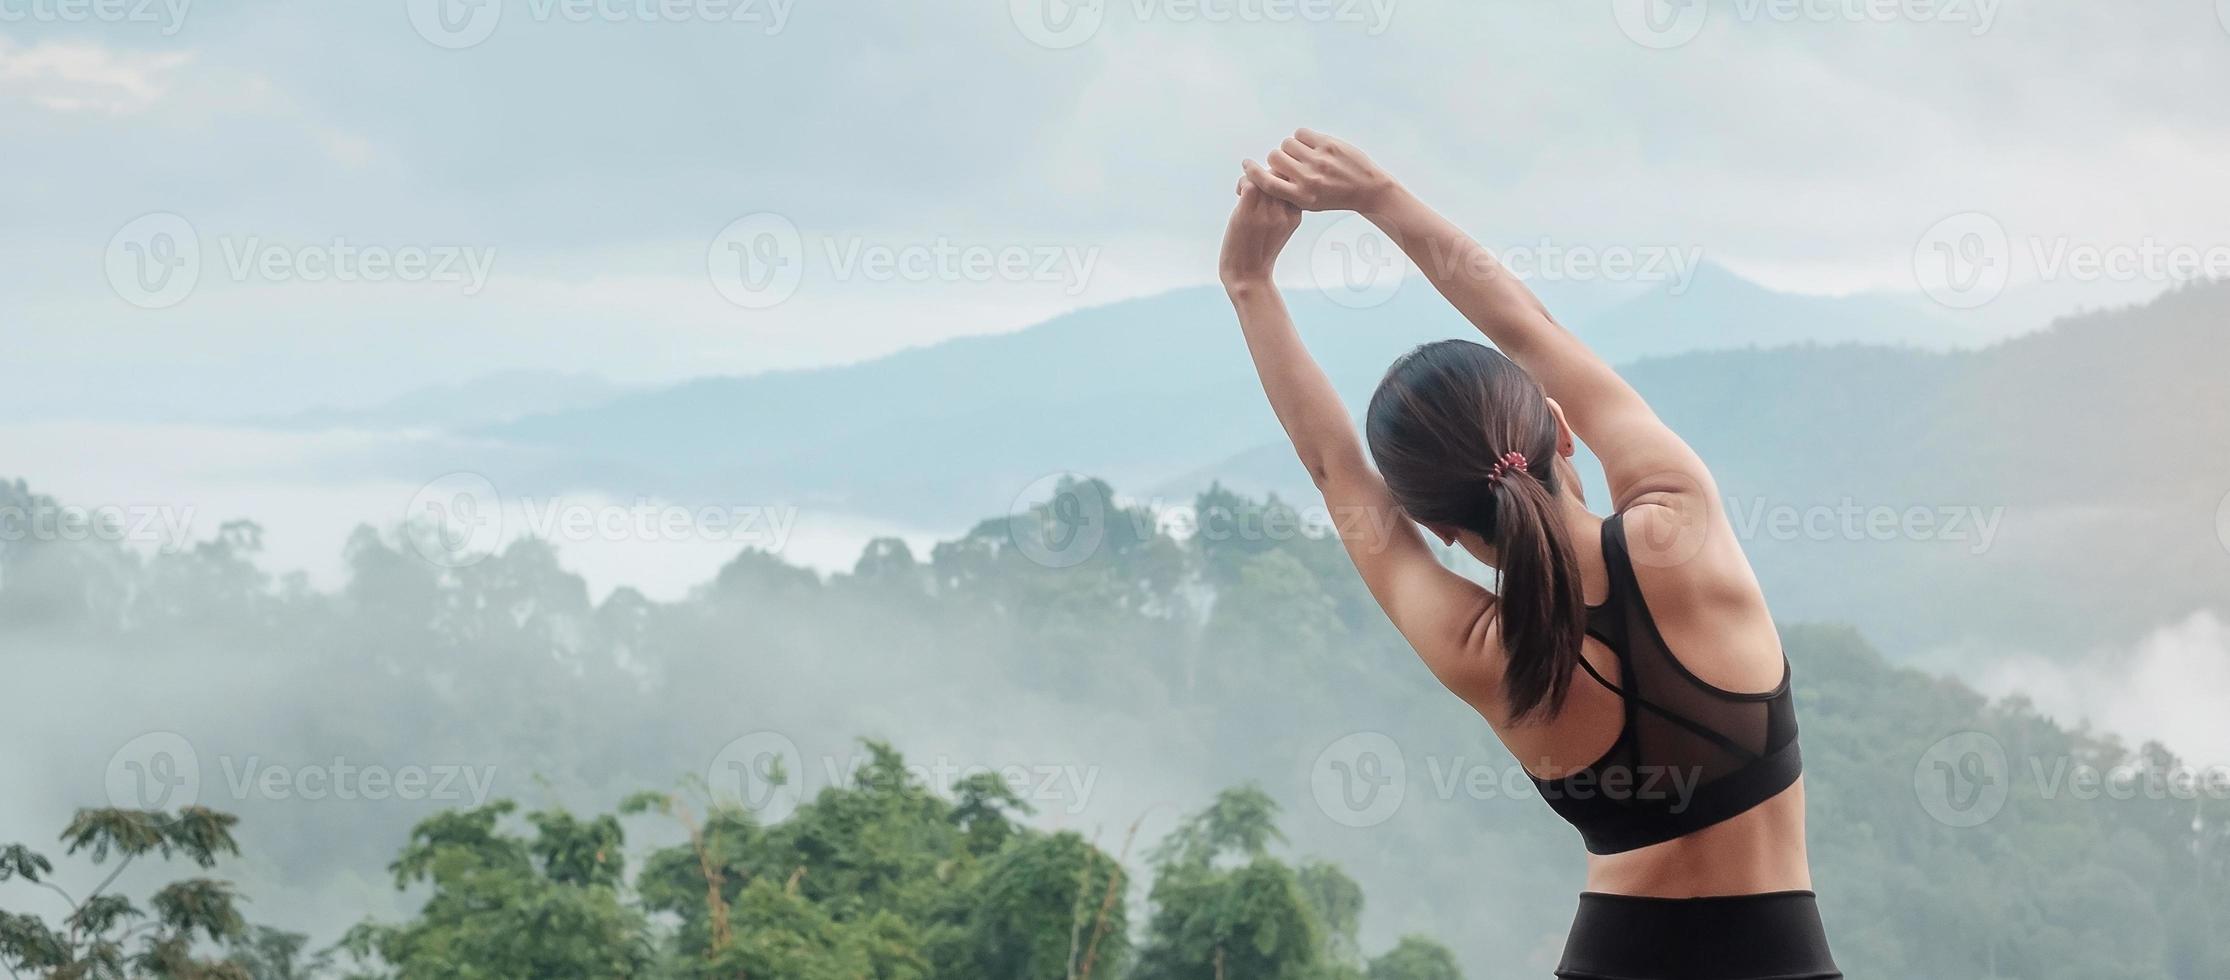 atleet vrouw oefening in de ochtend, jonge fitness vrouw die spieren uitrekt tegen uitzicht op de bergen, opwarmen klaar voor hardlopen of joggen. workout, welzijn en sport meisje concepten foto